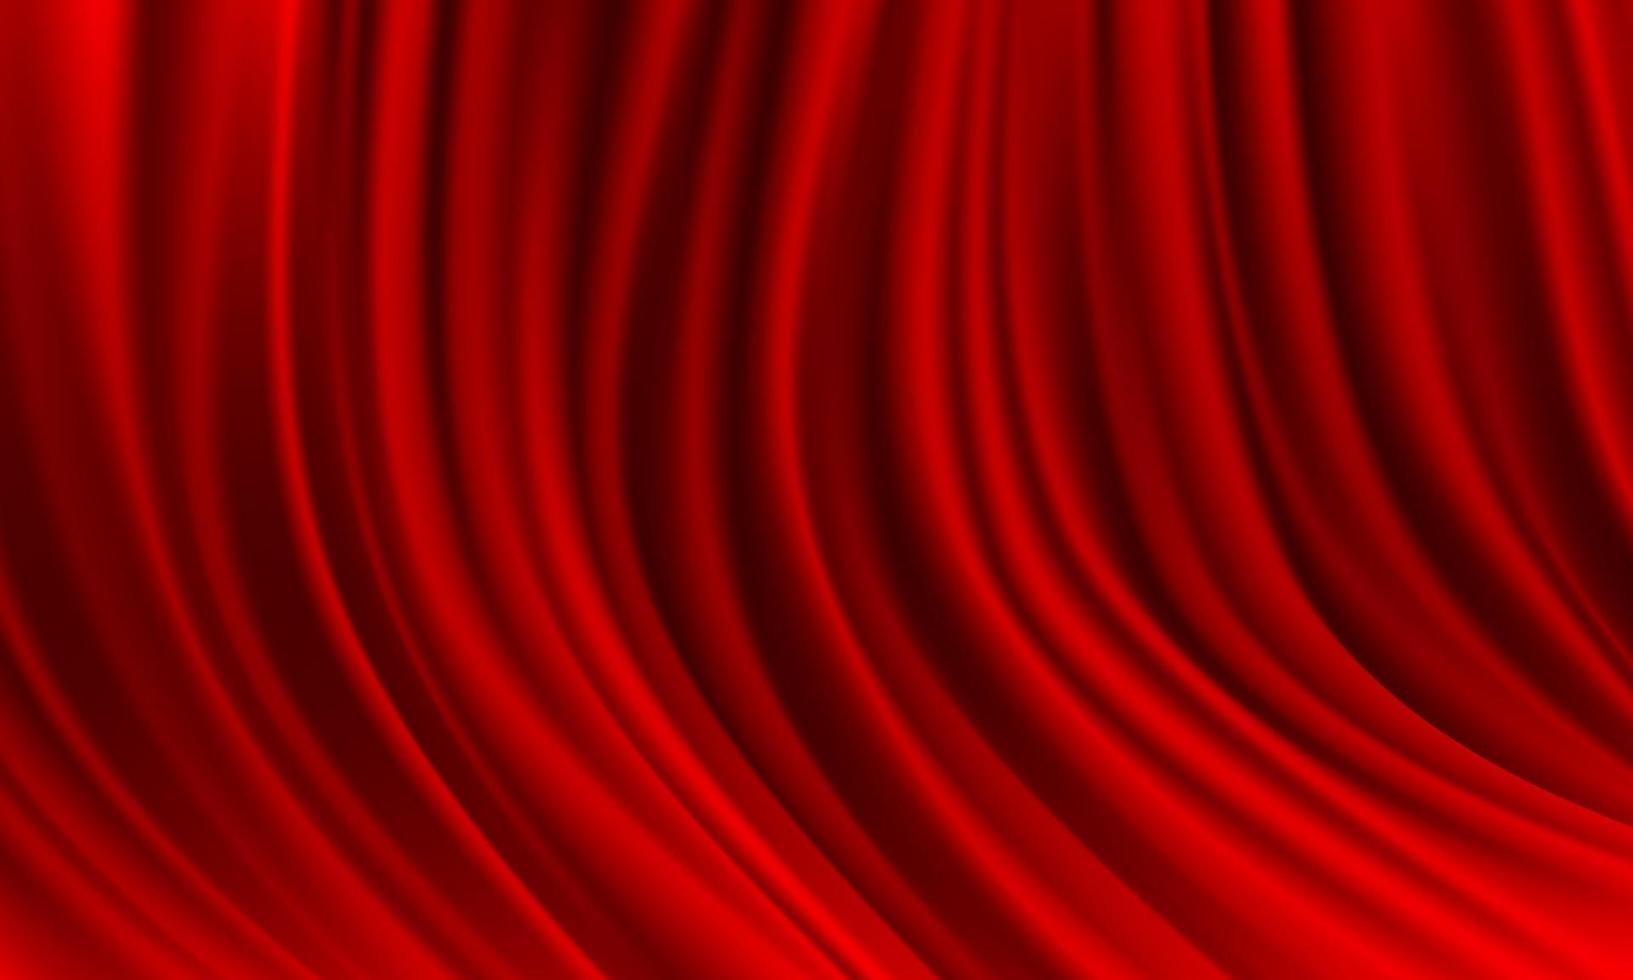 realistische rote stoffstreifen wellenhintergrundbeschaffenheitsvektor vektor